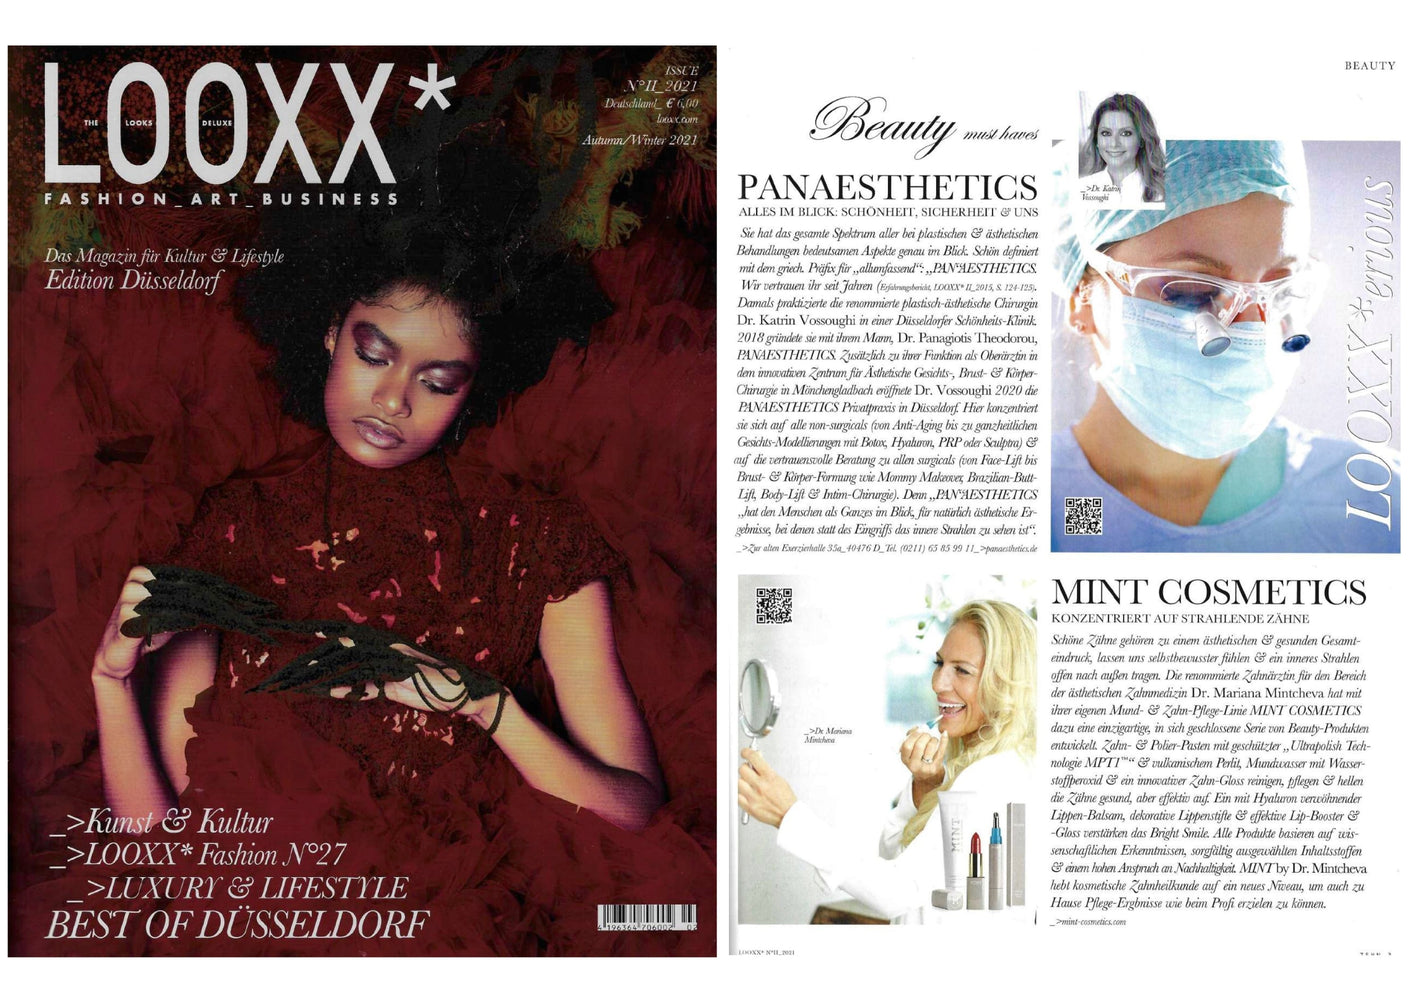 MINT by Dr Mintcheva im Looxx Magazin